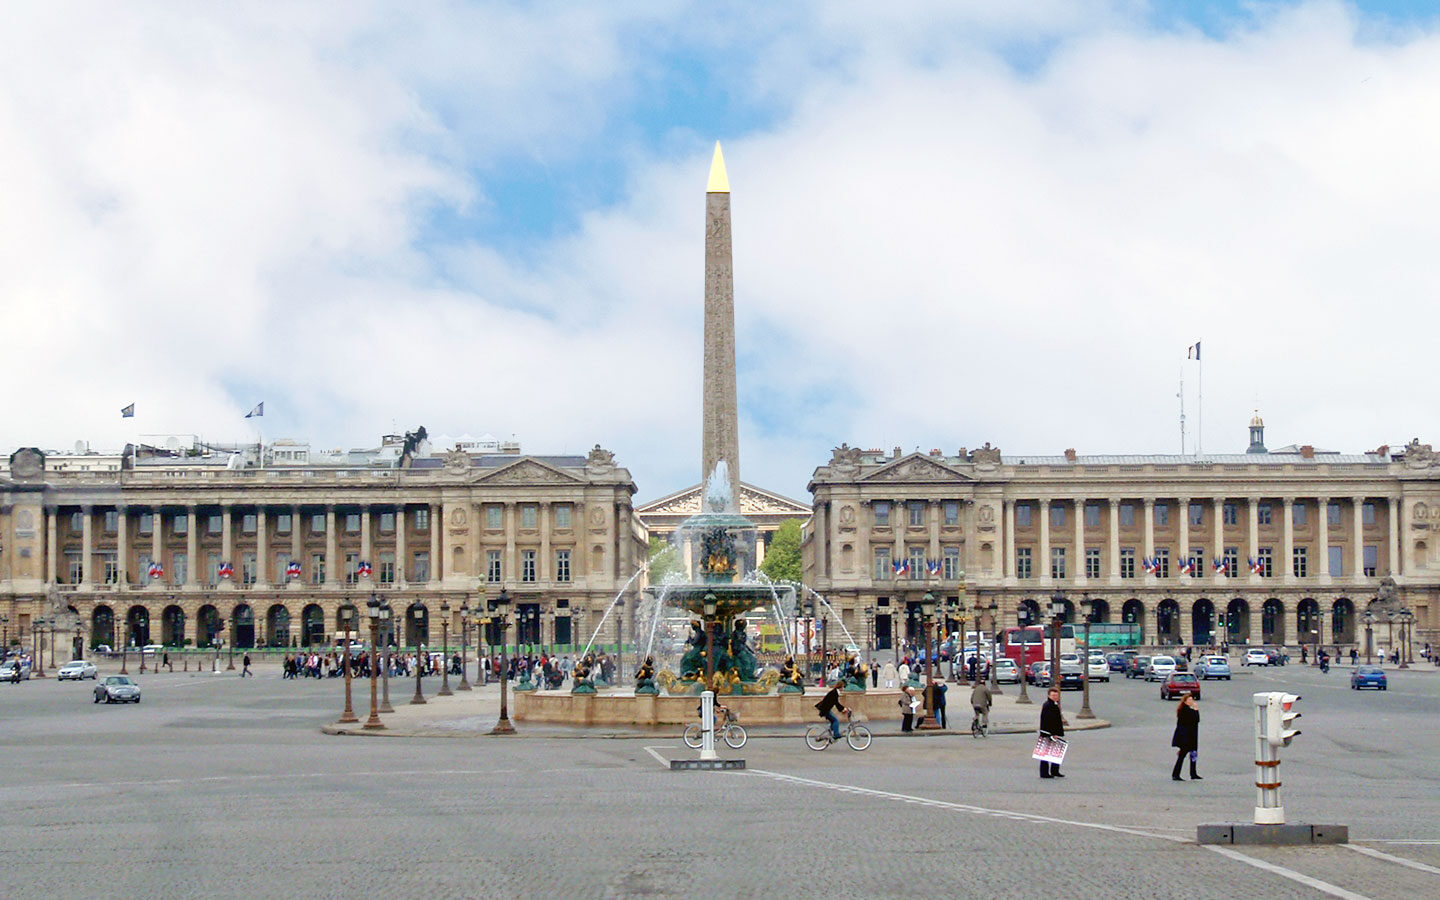 The Place de la Concorde in Paris